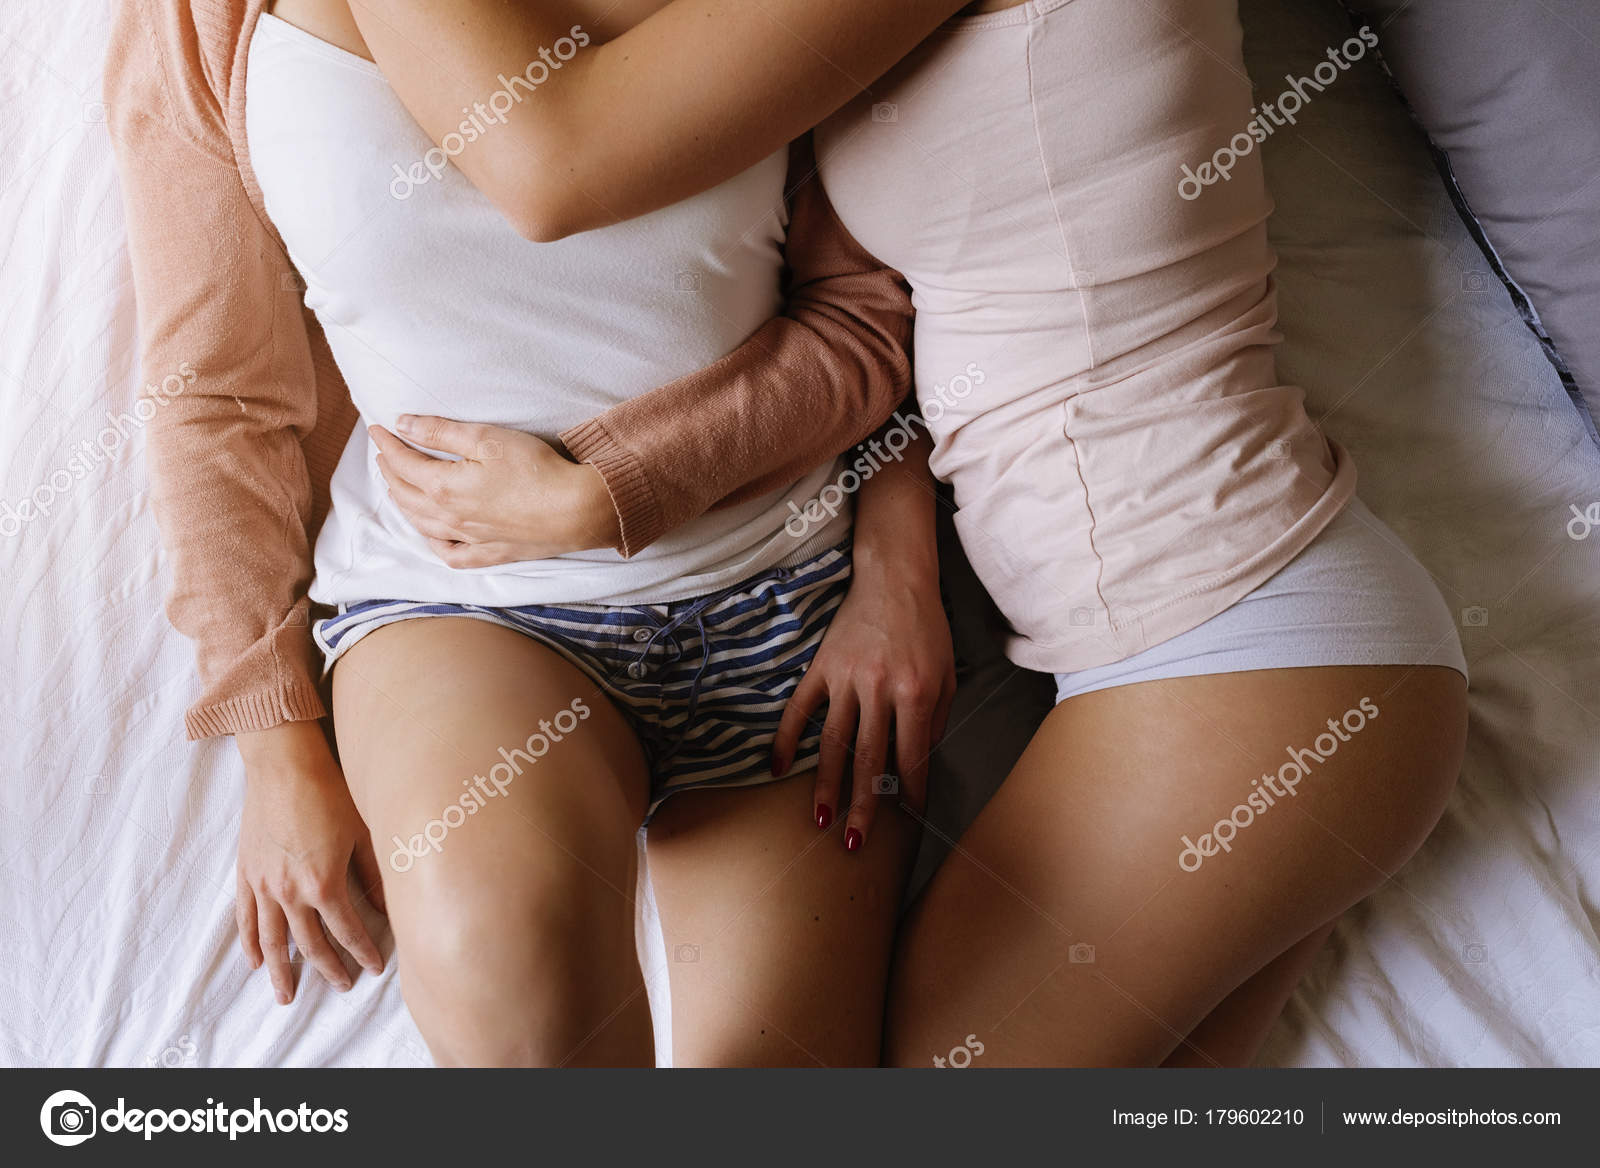 Clover Full Body Massage Lesbian